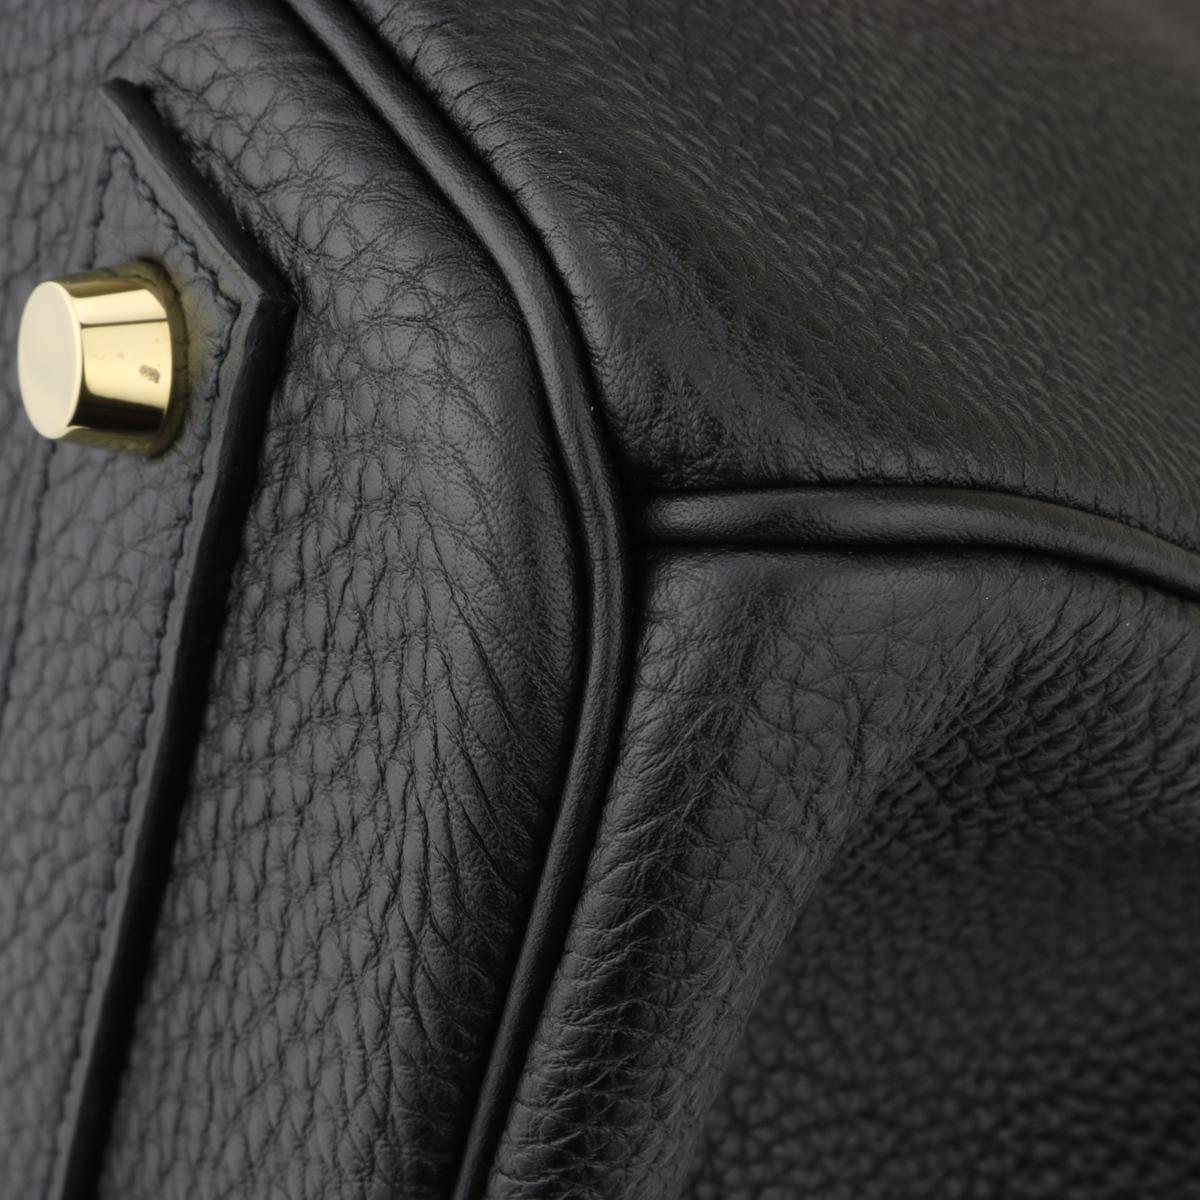 Hermès Birkin Bag 40cm Black Togo Leather with Gold Hardware Stamp N 2010 4